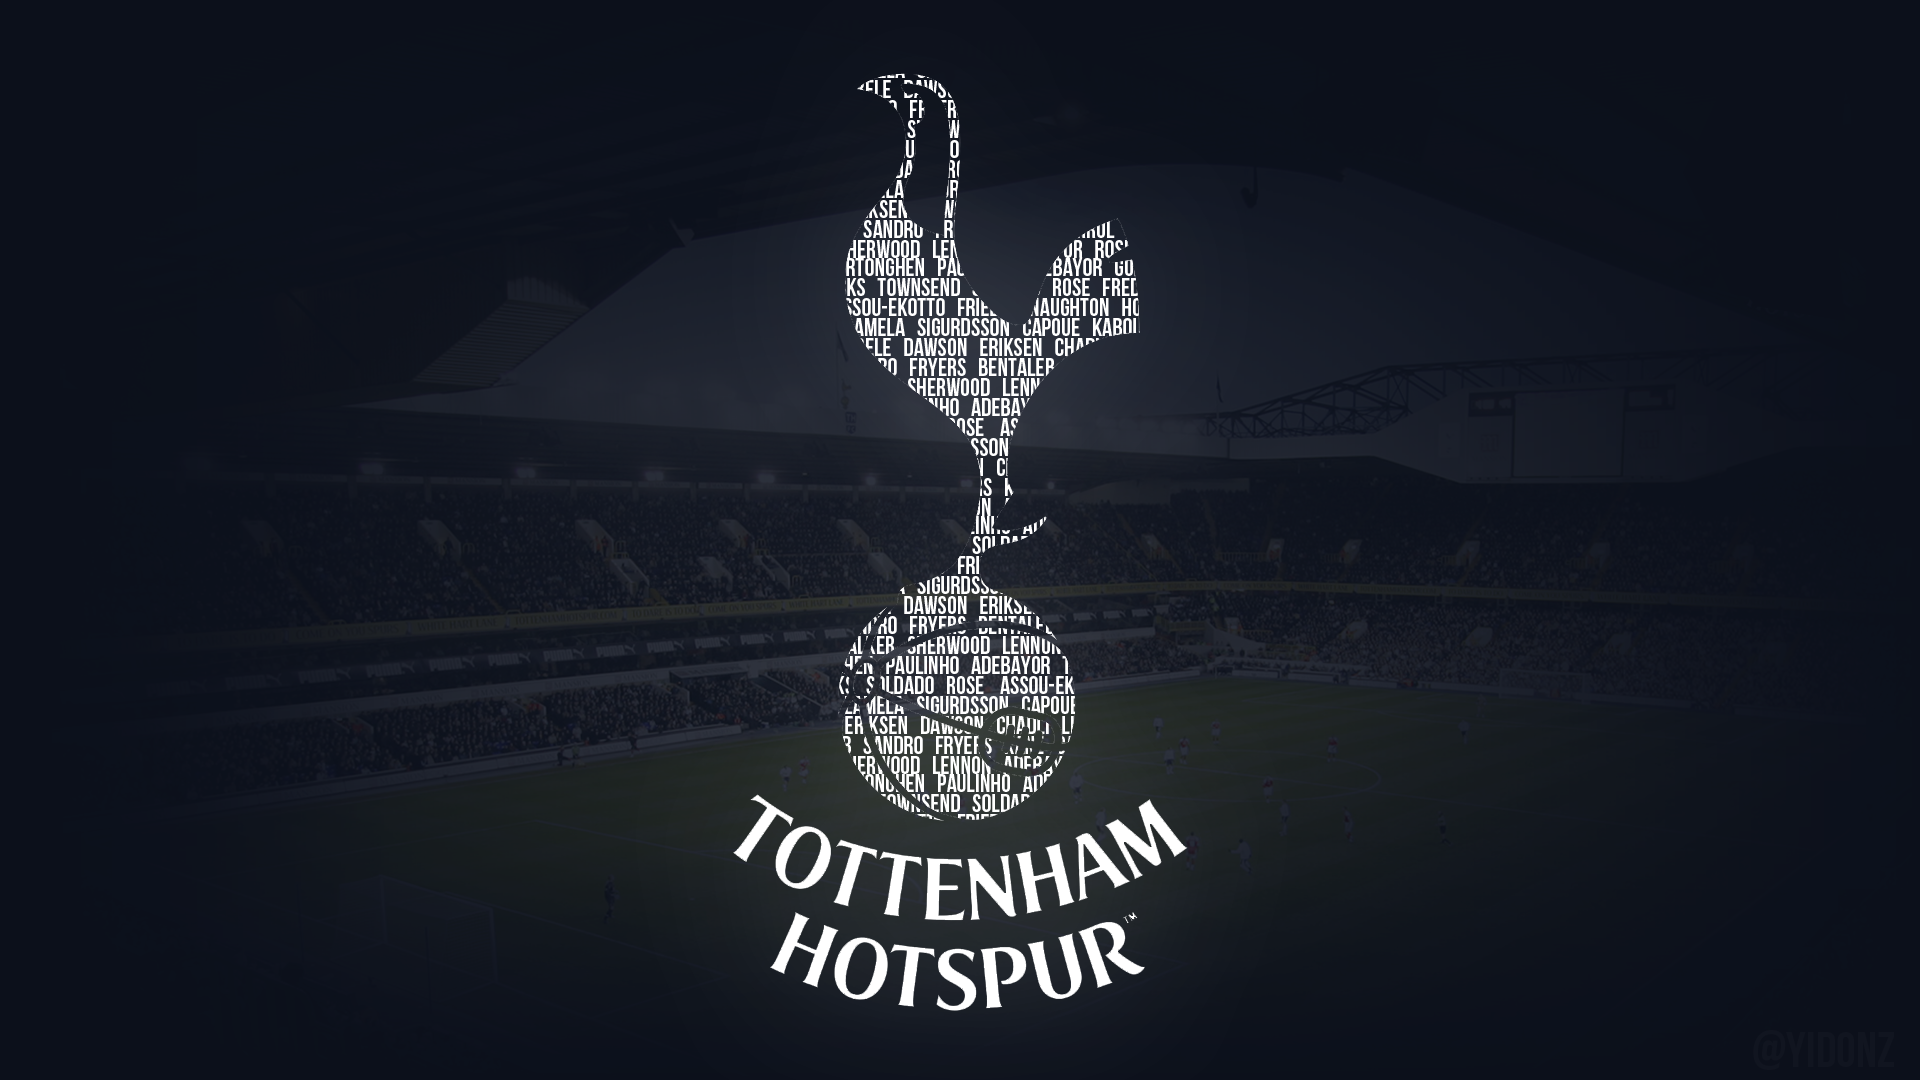 Tottenham Hotspur Wallpaper By Donioli